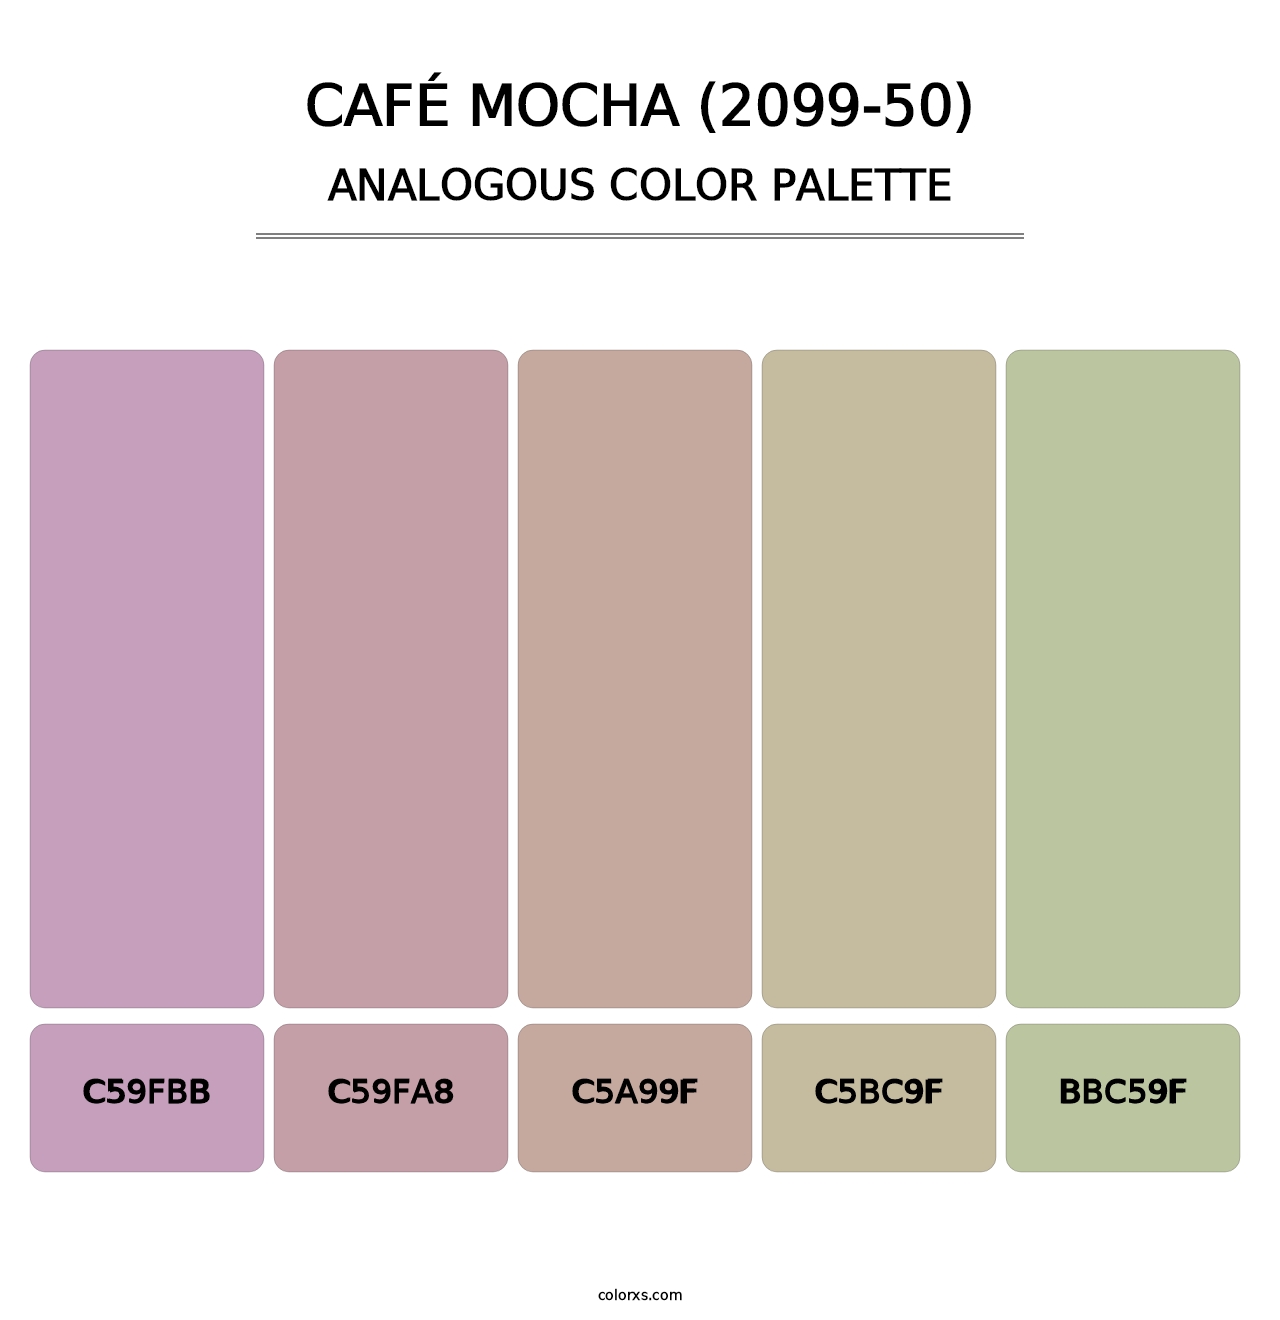 Café Mocha (2099-50) - Analogous Color Palette